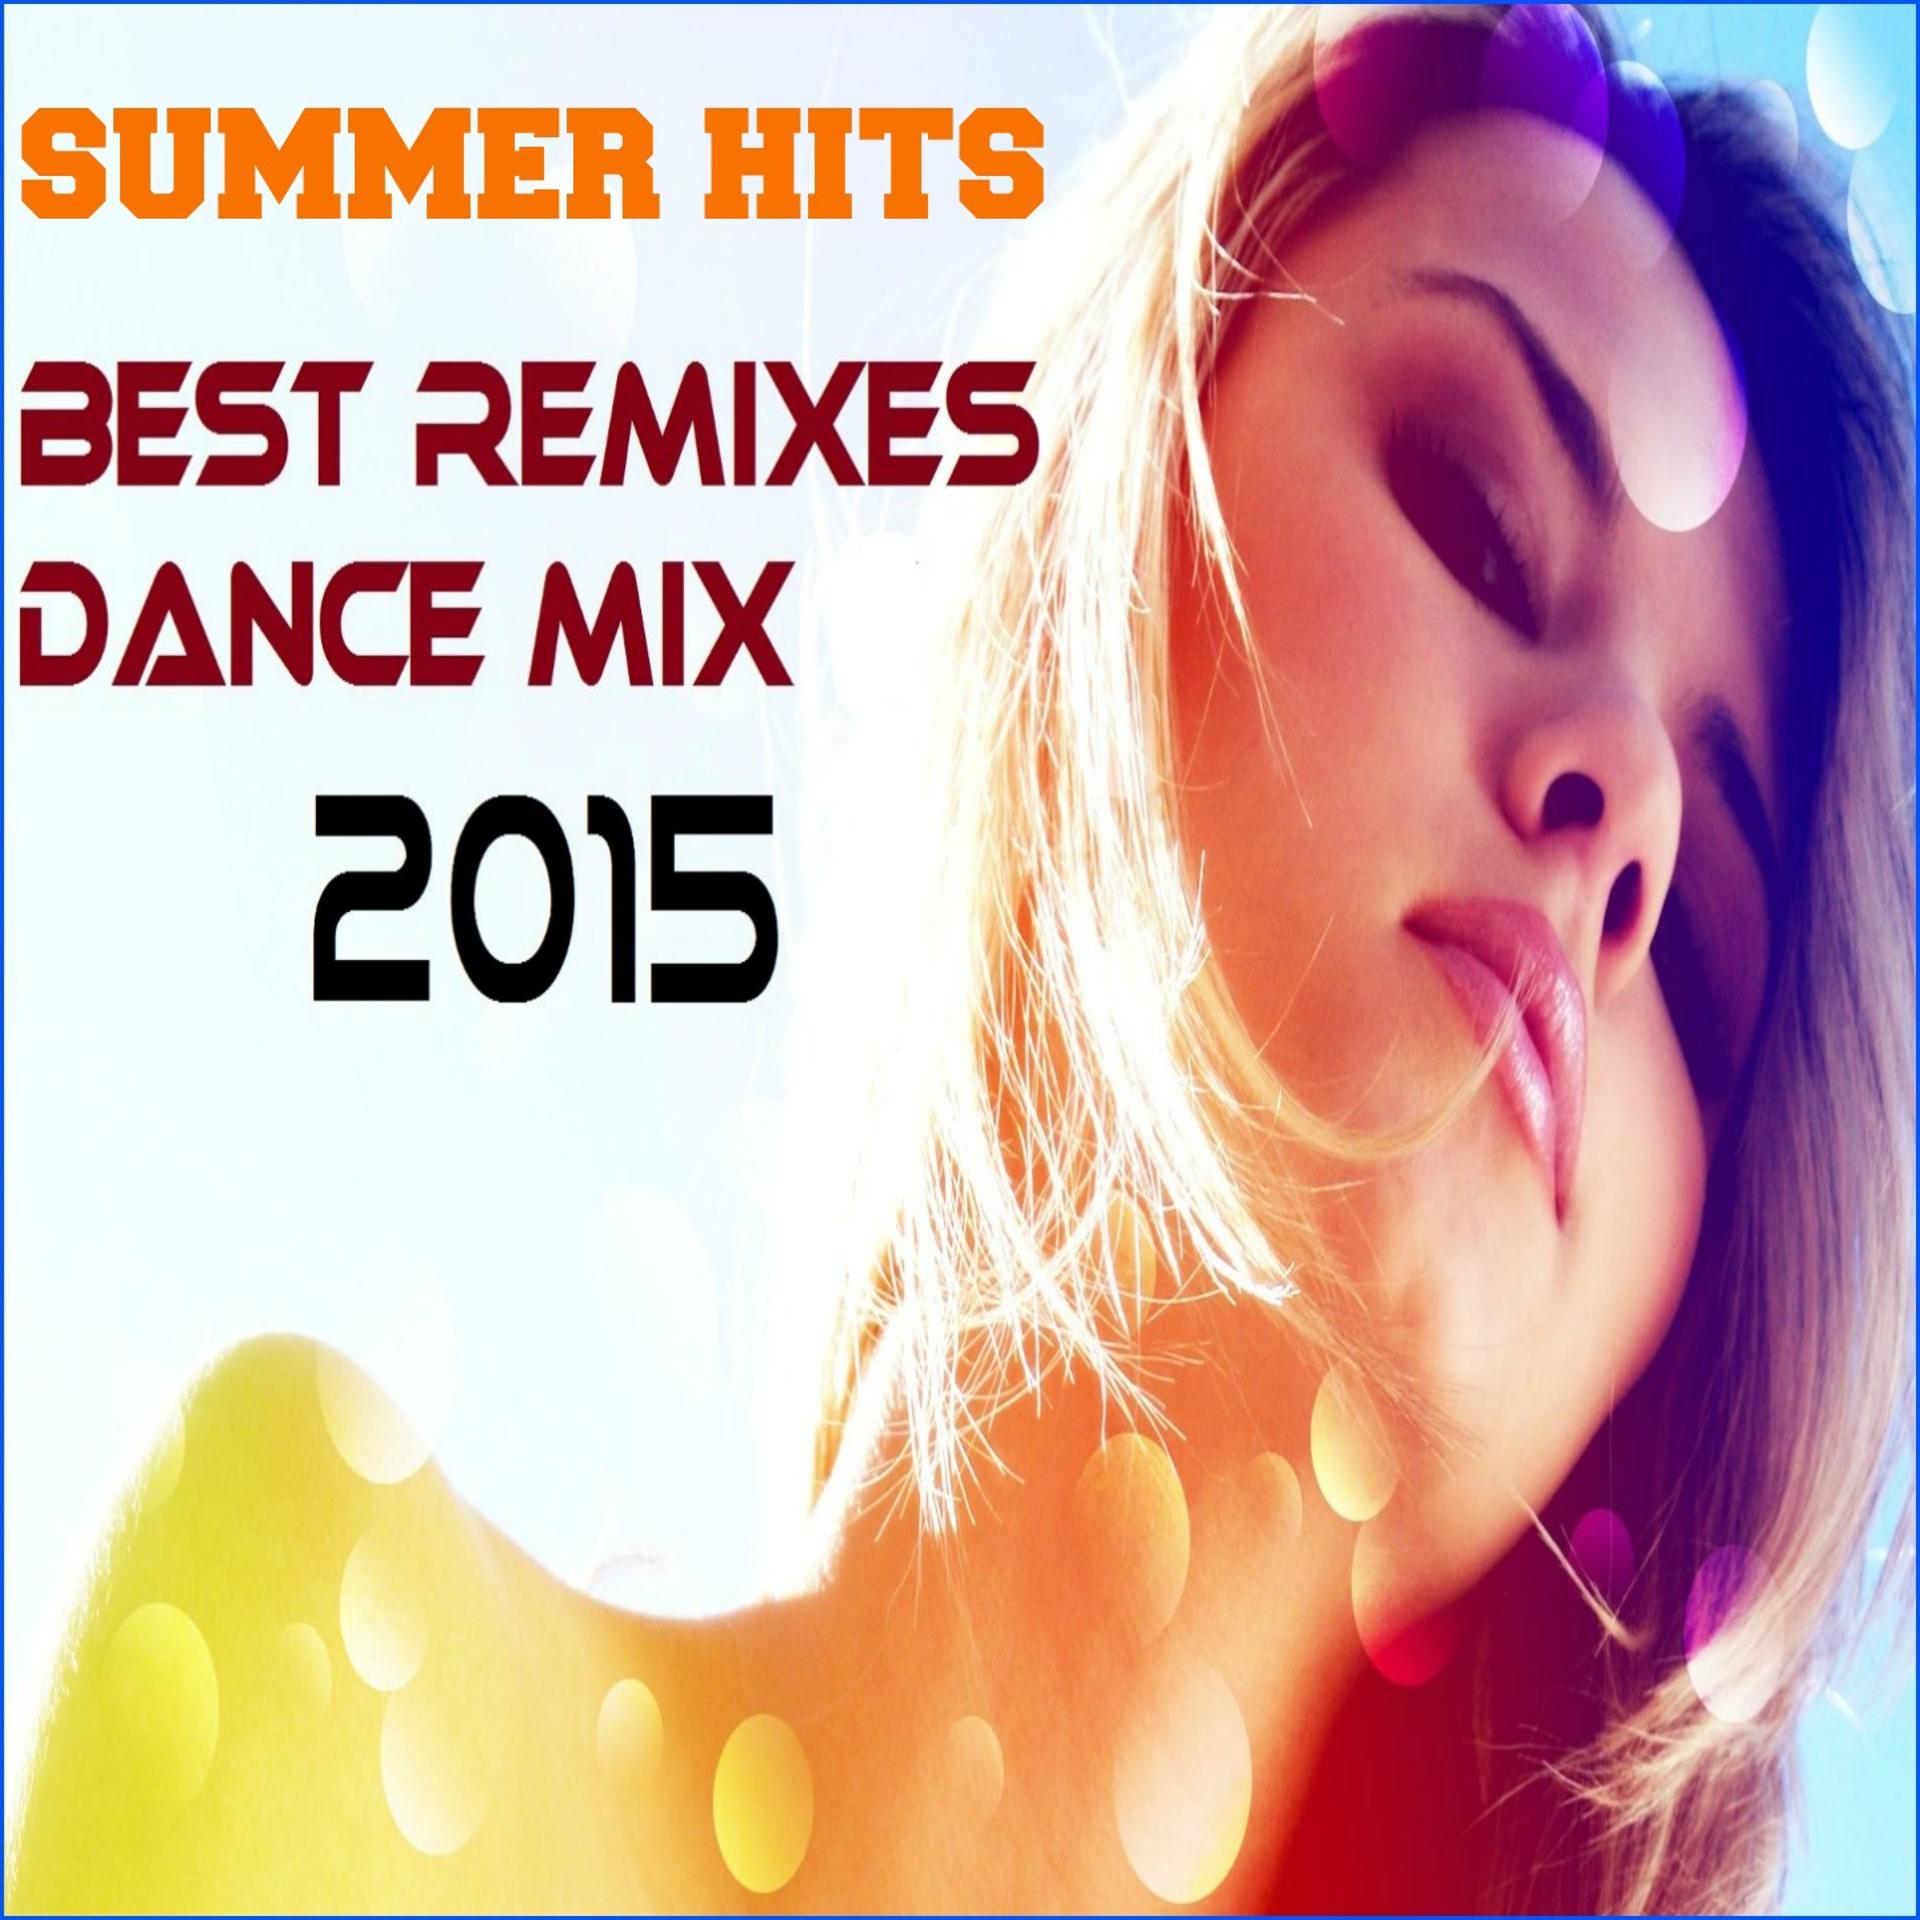 Best remixes dance